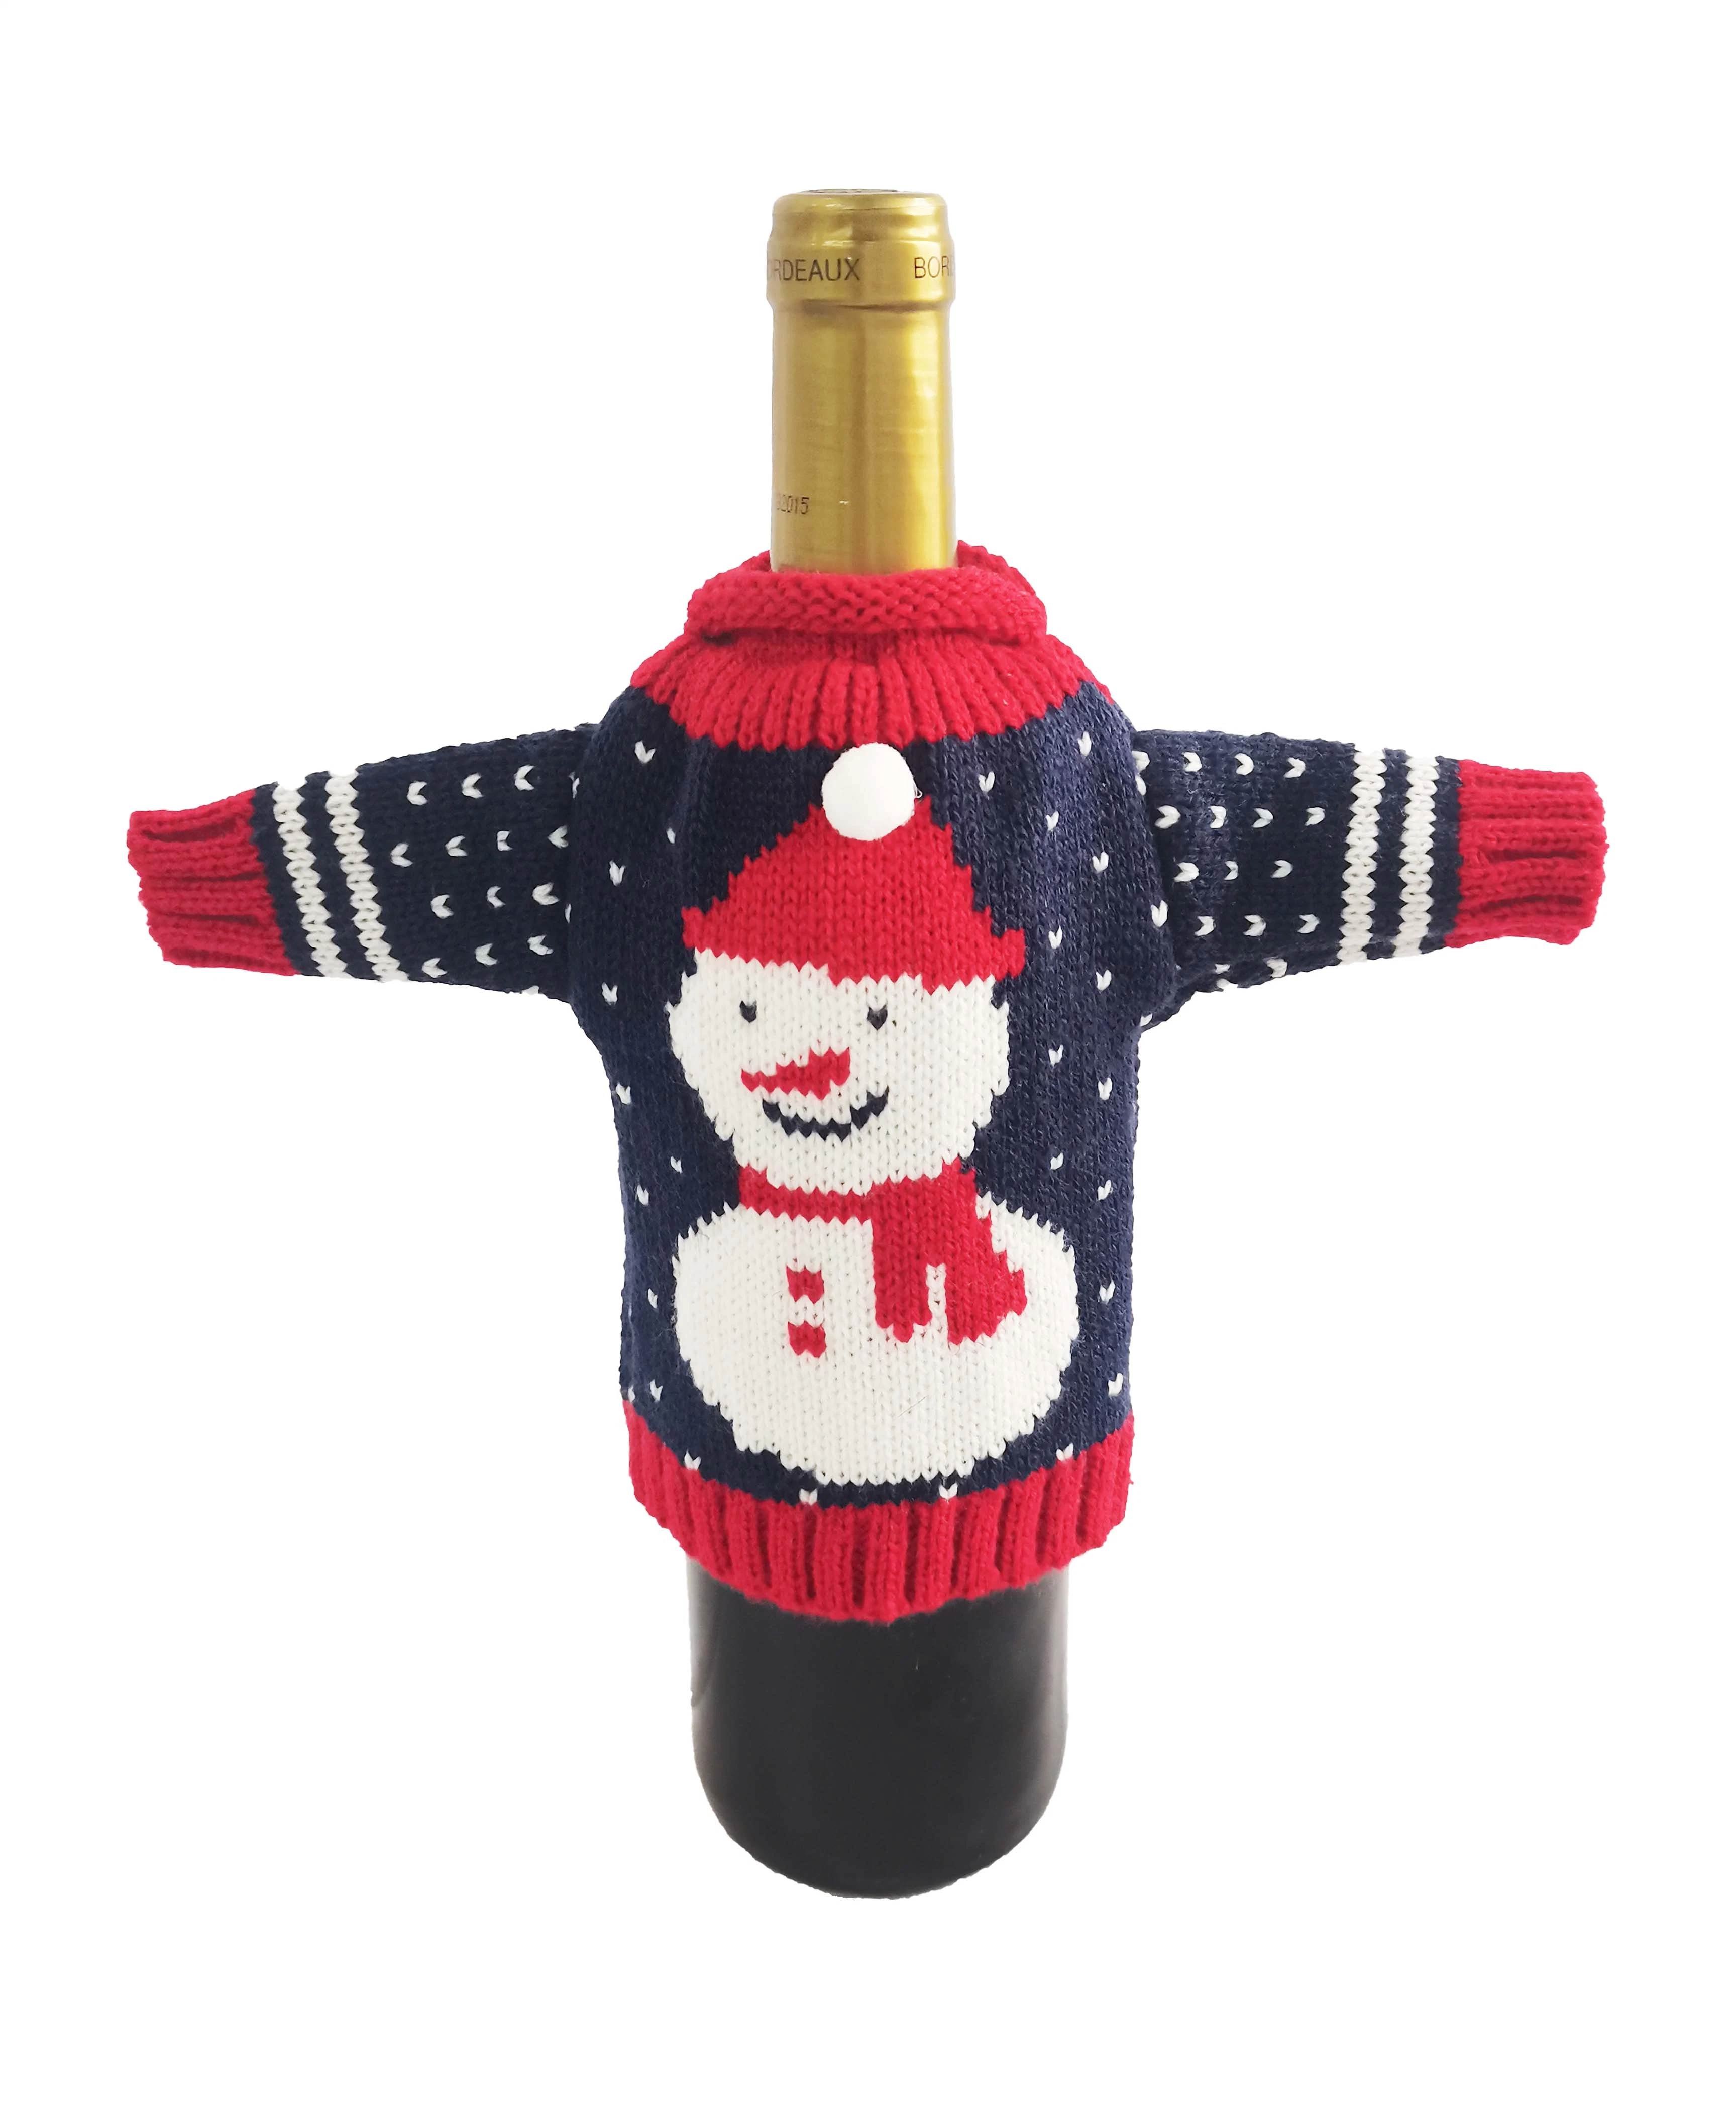 Décoration de Noël personnalisés populaires broderie tricot jacquard Bouteille de vin le couvercle